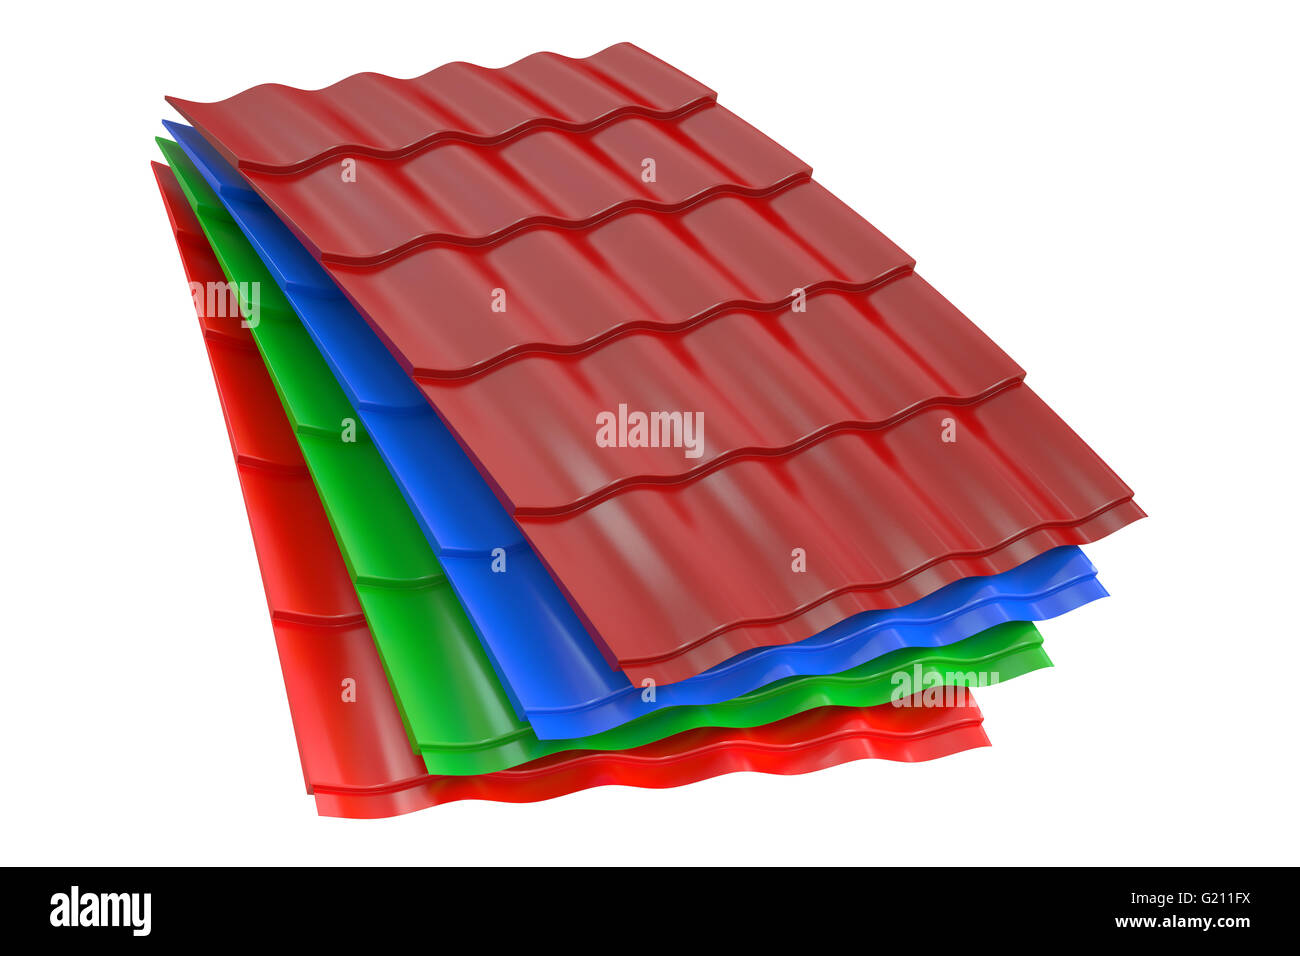 Métal de couleur des tuiles du toit, rendu 3D isolé sur fond blanc Banque D'Images